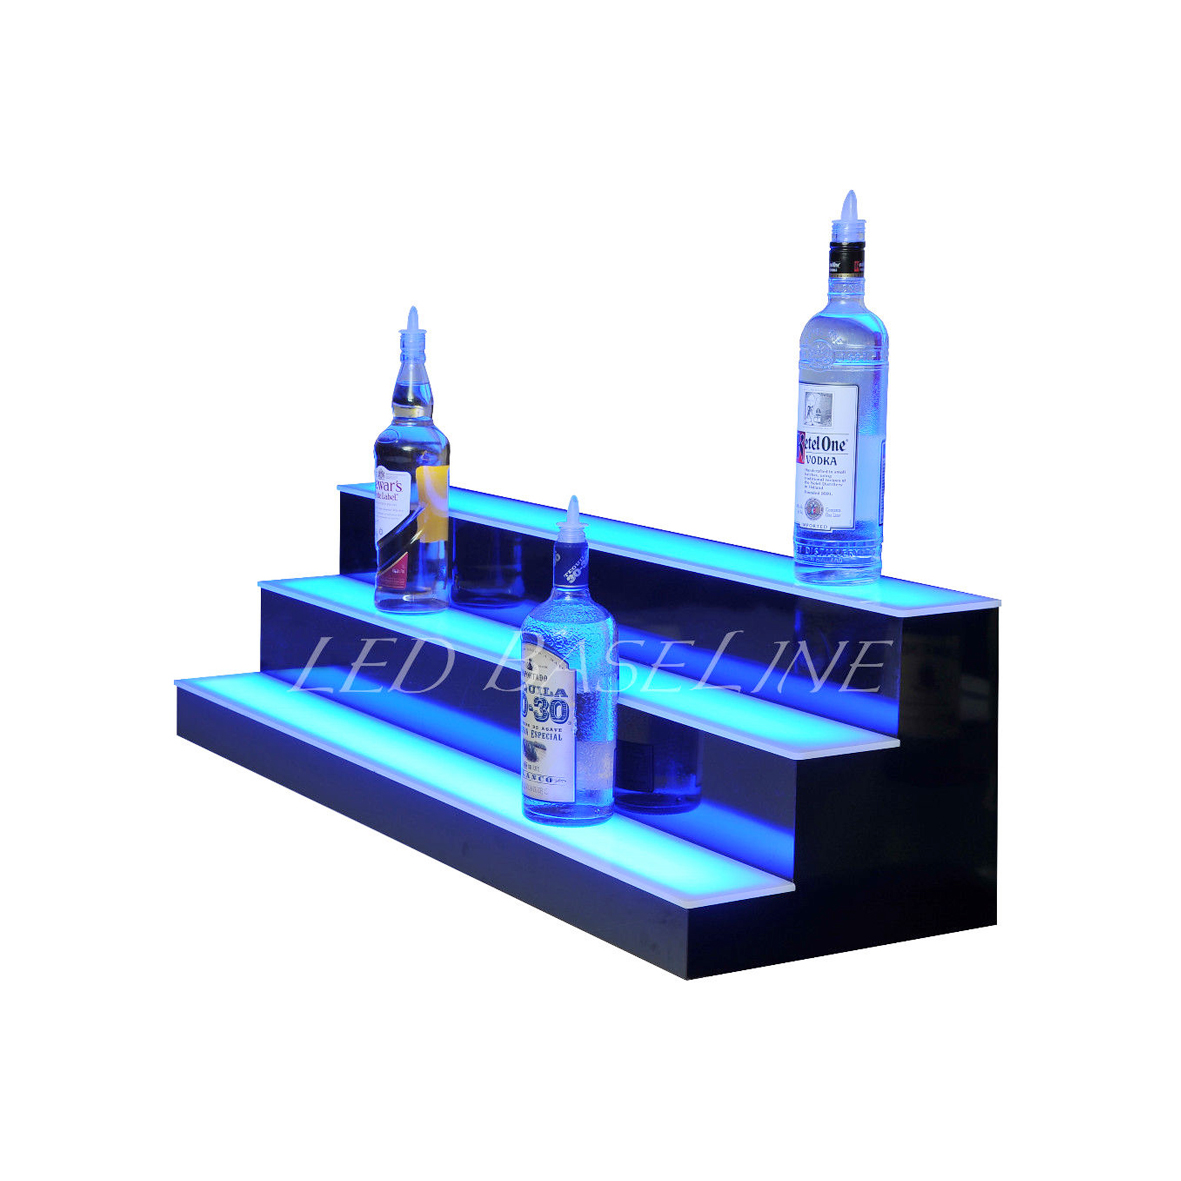 3-slojni osvijetljeni akrilni stalak za boce vina s RGB osvjetljenjem i prilagođenim logotipom